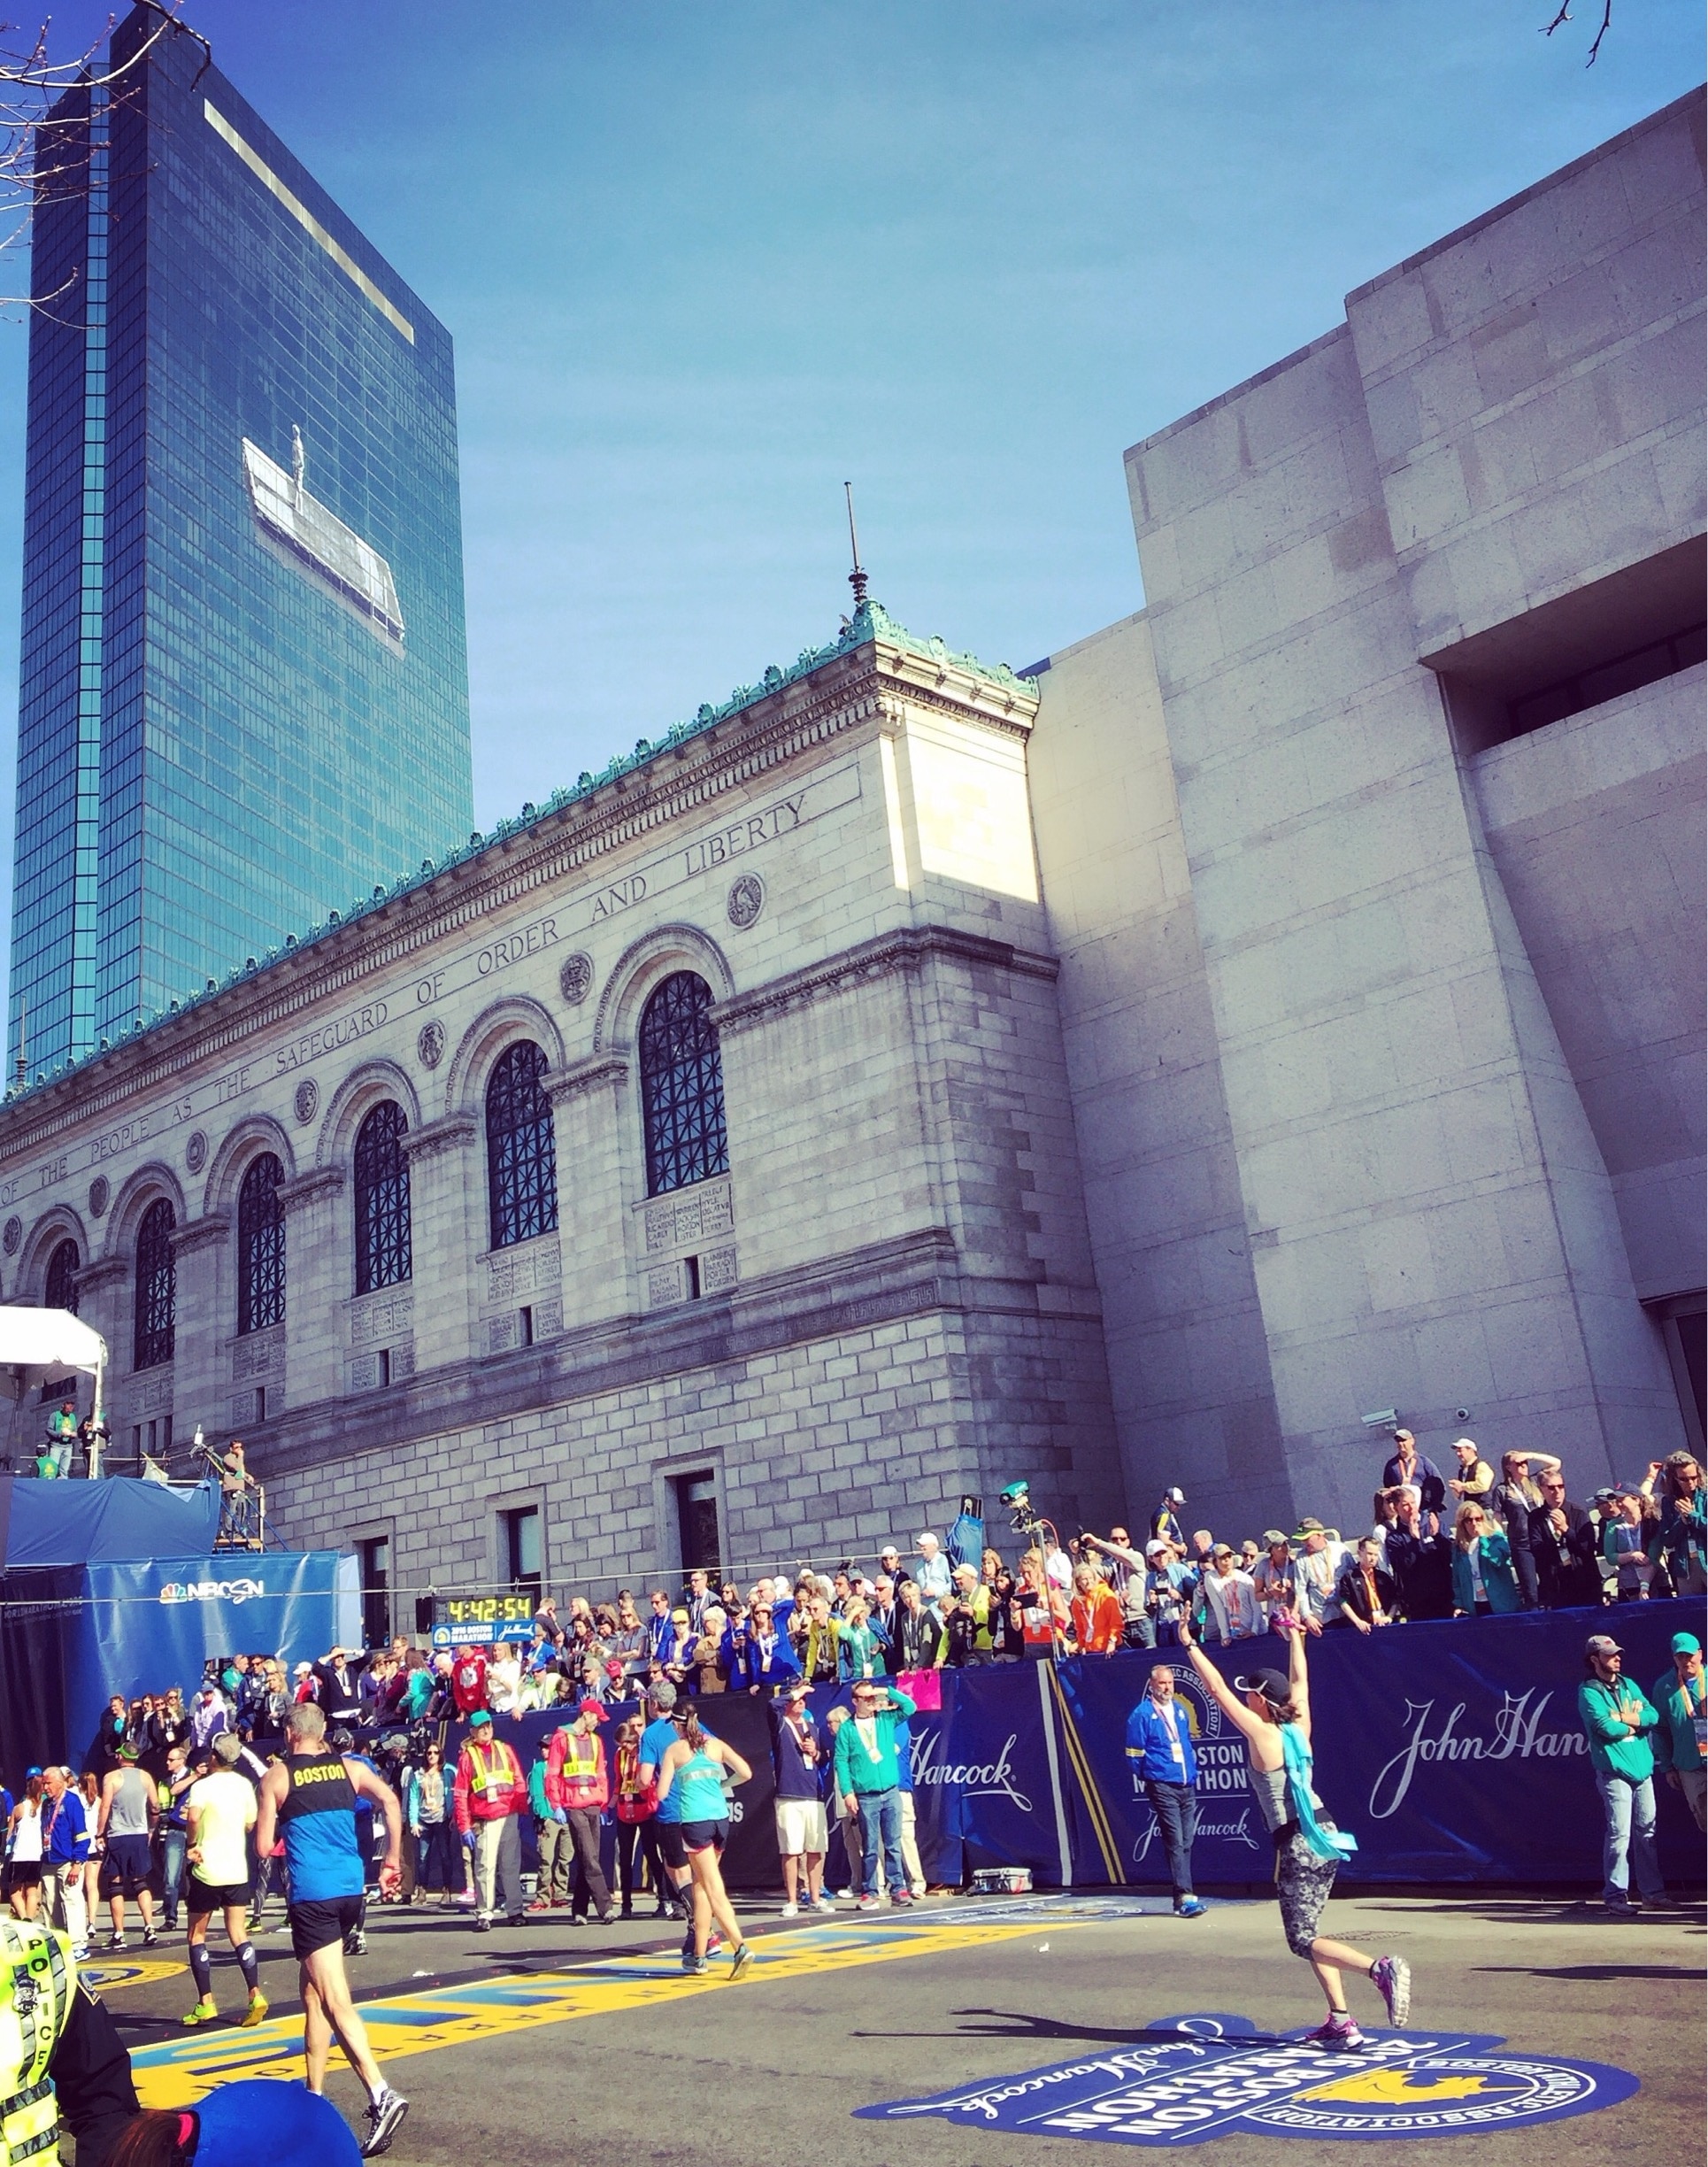 Boston Marathon! #BostonStrong #BostonMarathon #Boston #LifeAtExpedia #Apr2016